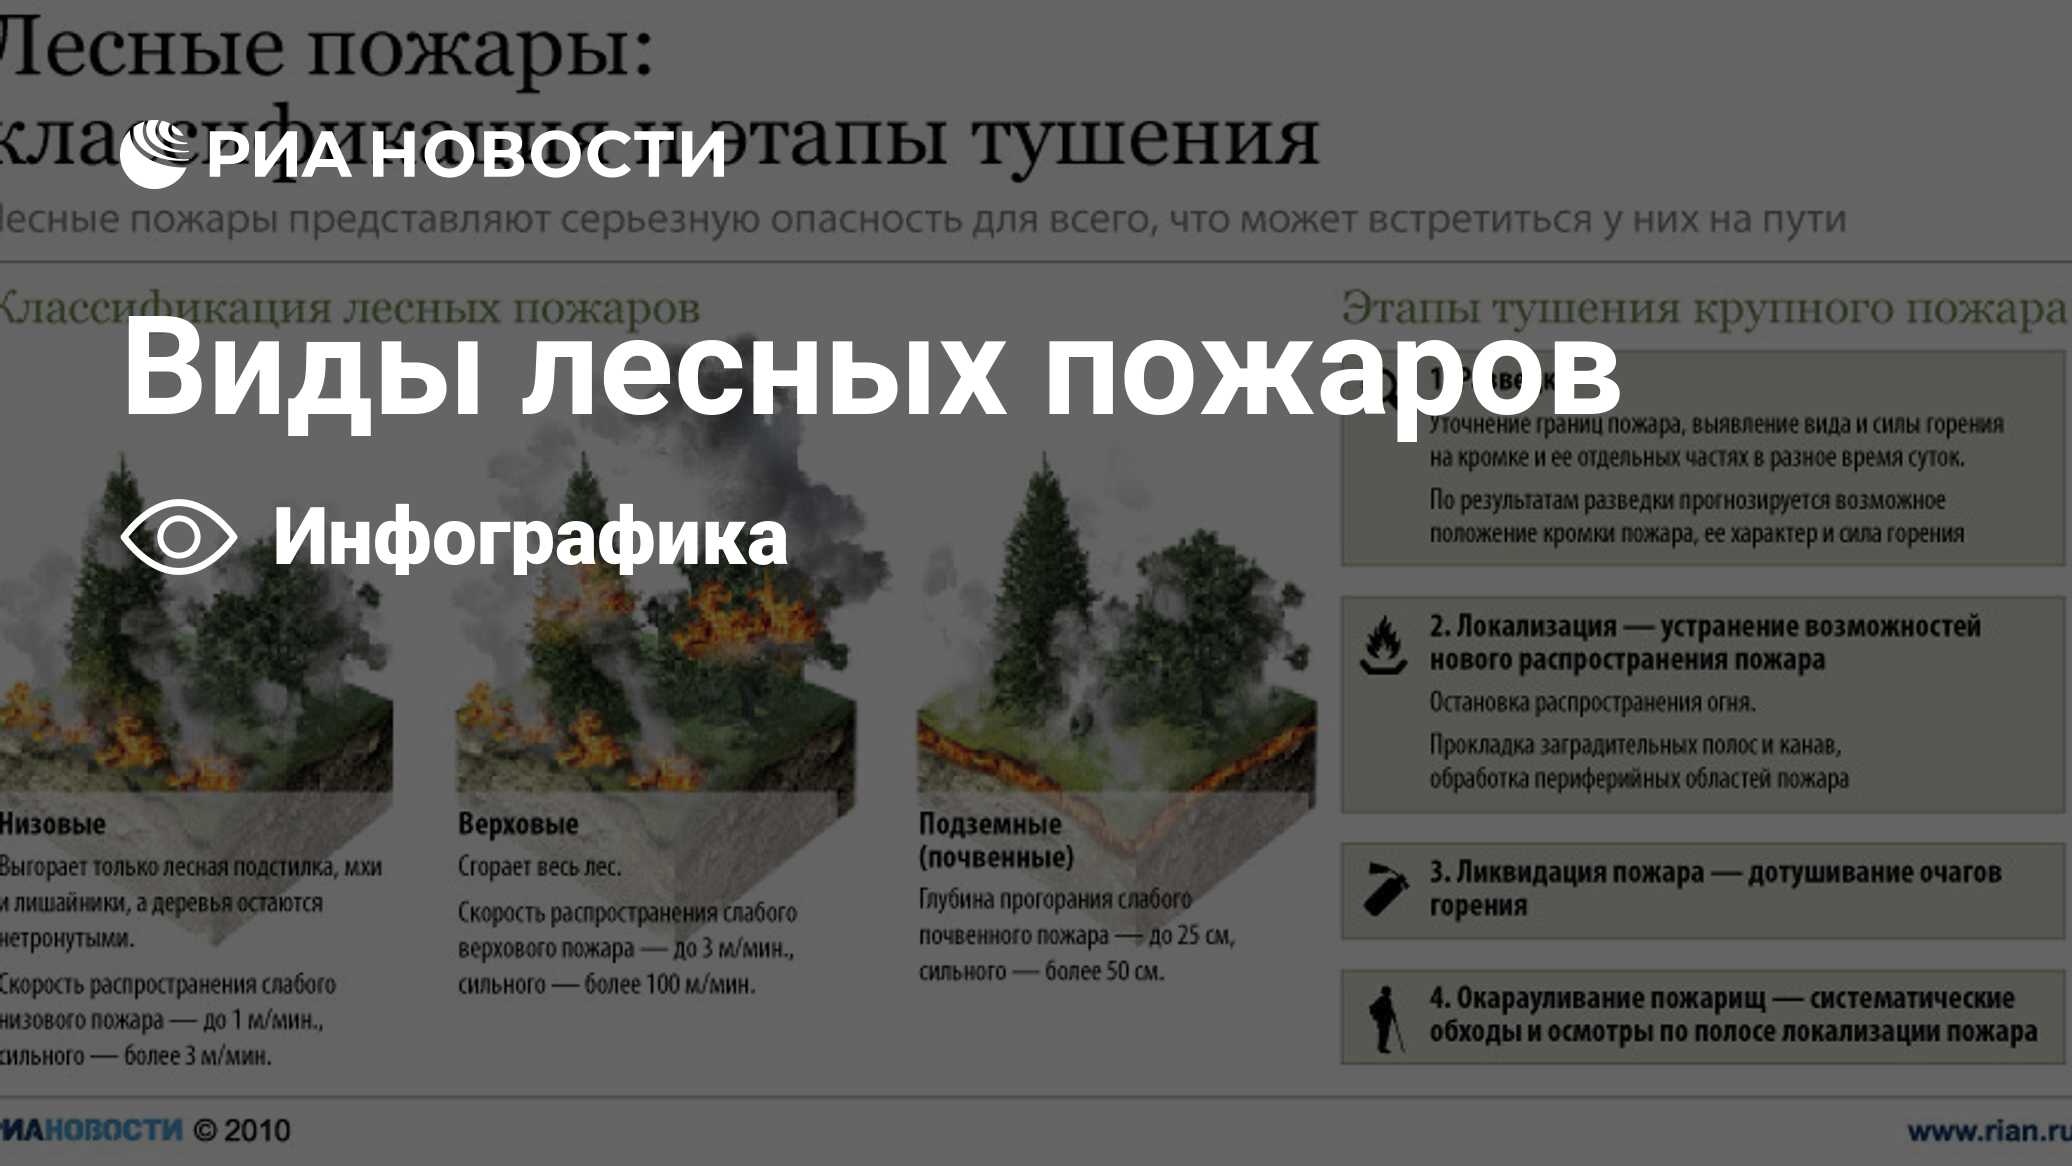 Виды лесных пожаров - РИА Новости, 18.04.2011